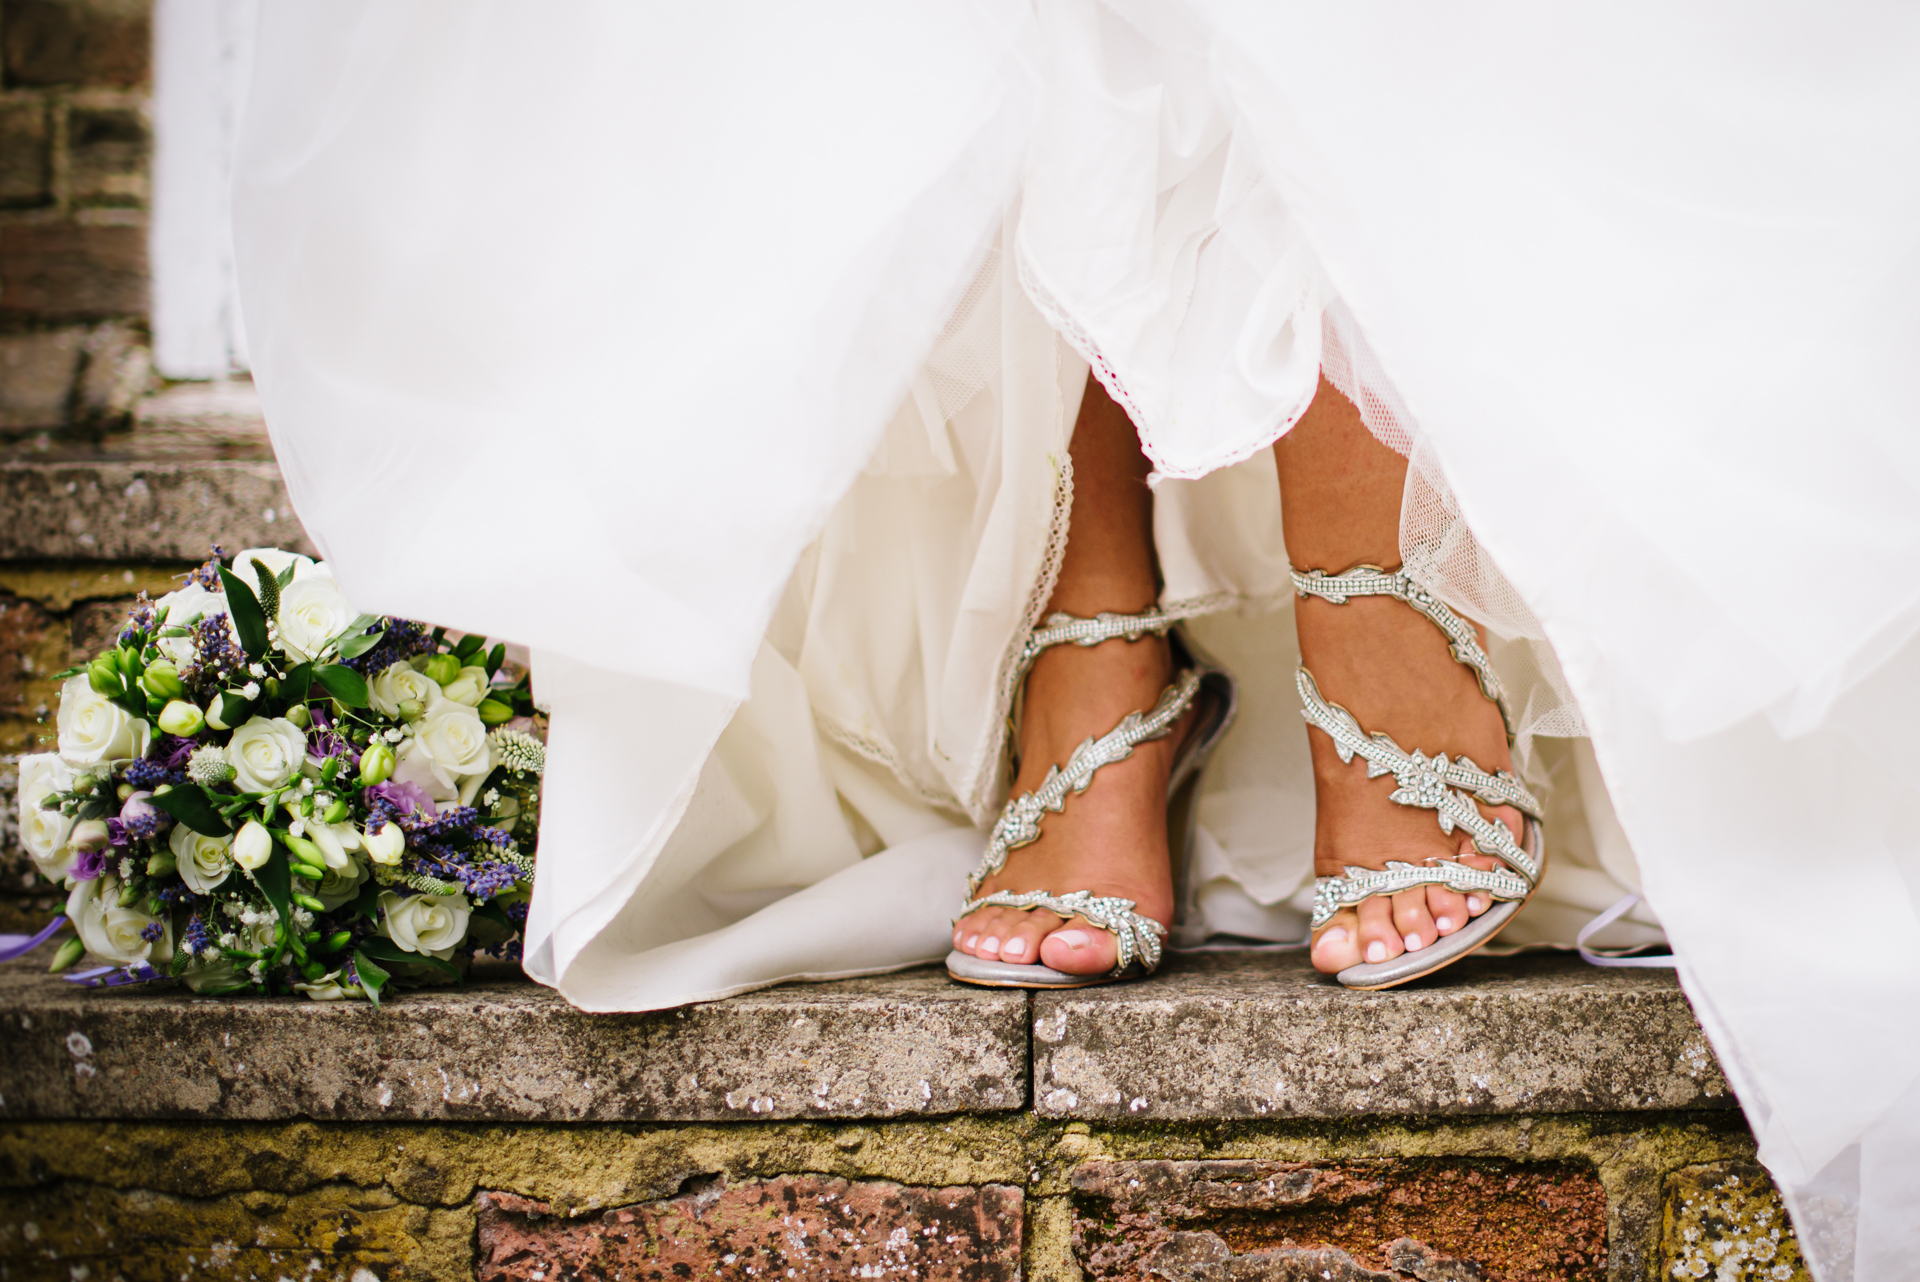 Brides shoes and bouquet